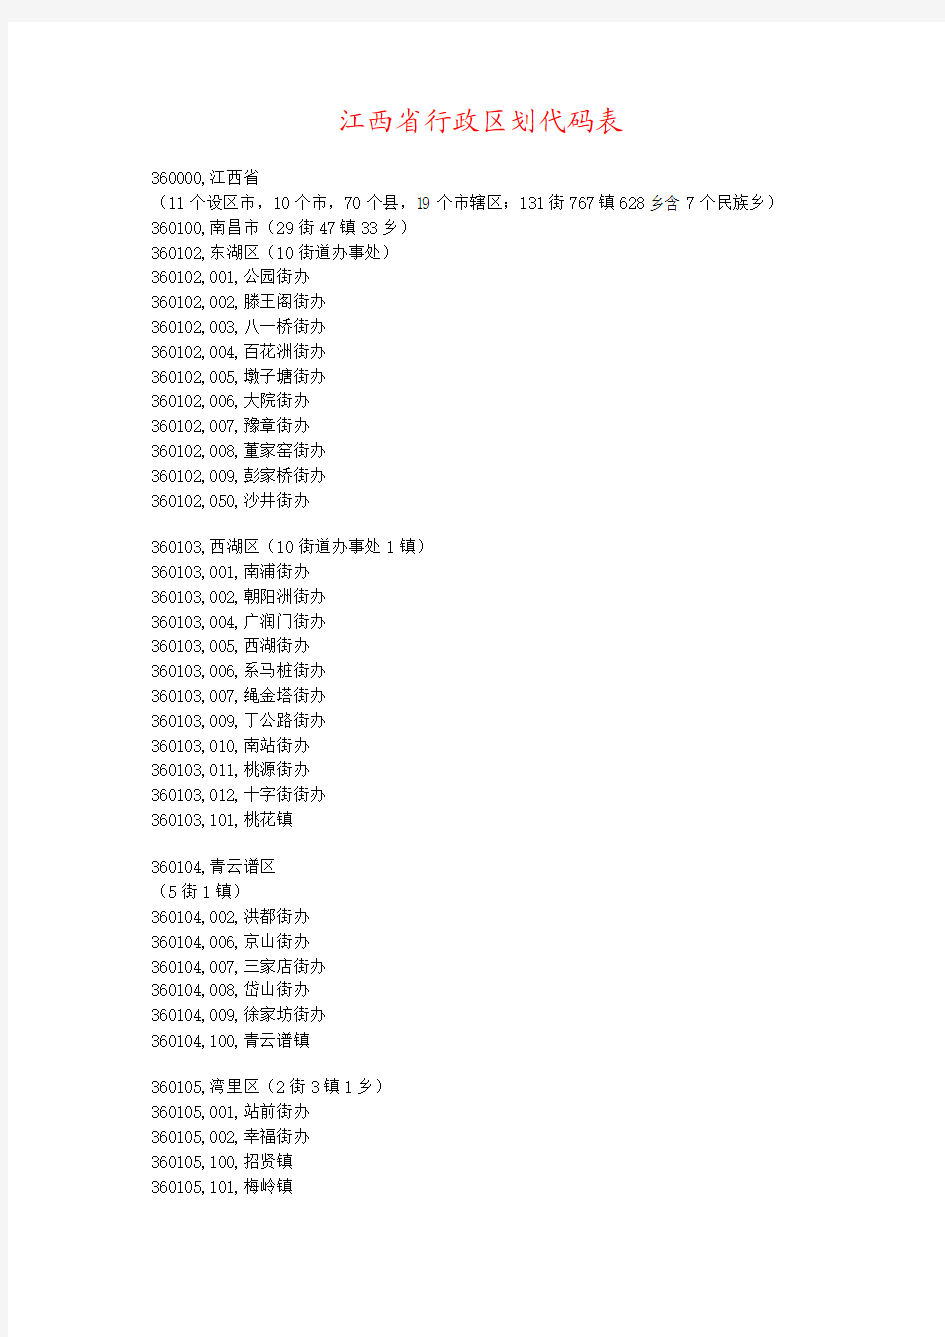 江西省行政区划代码表